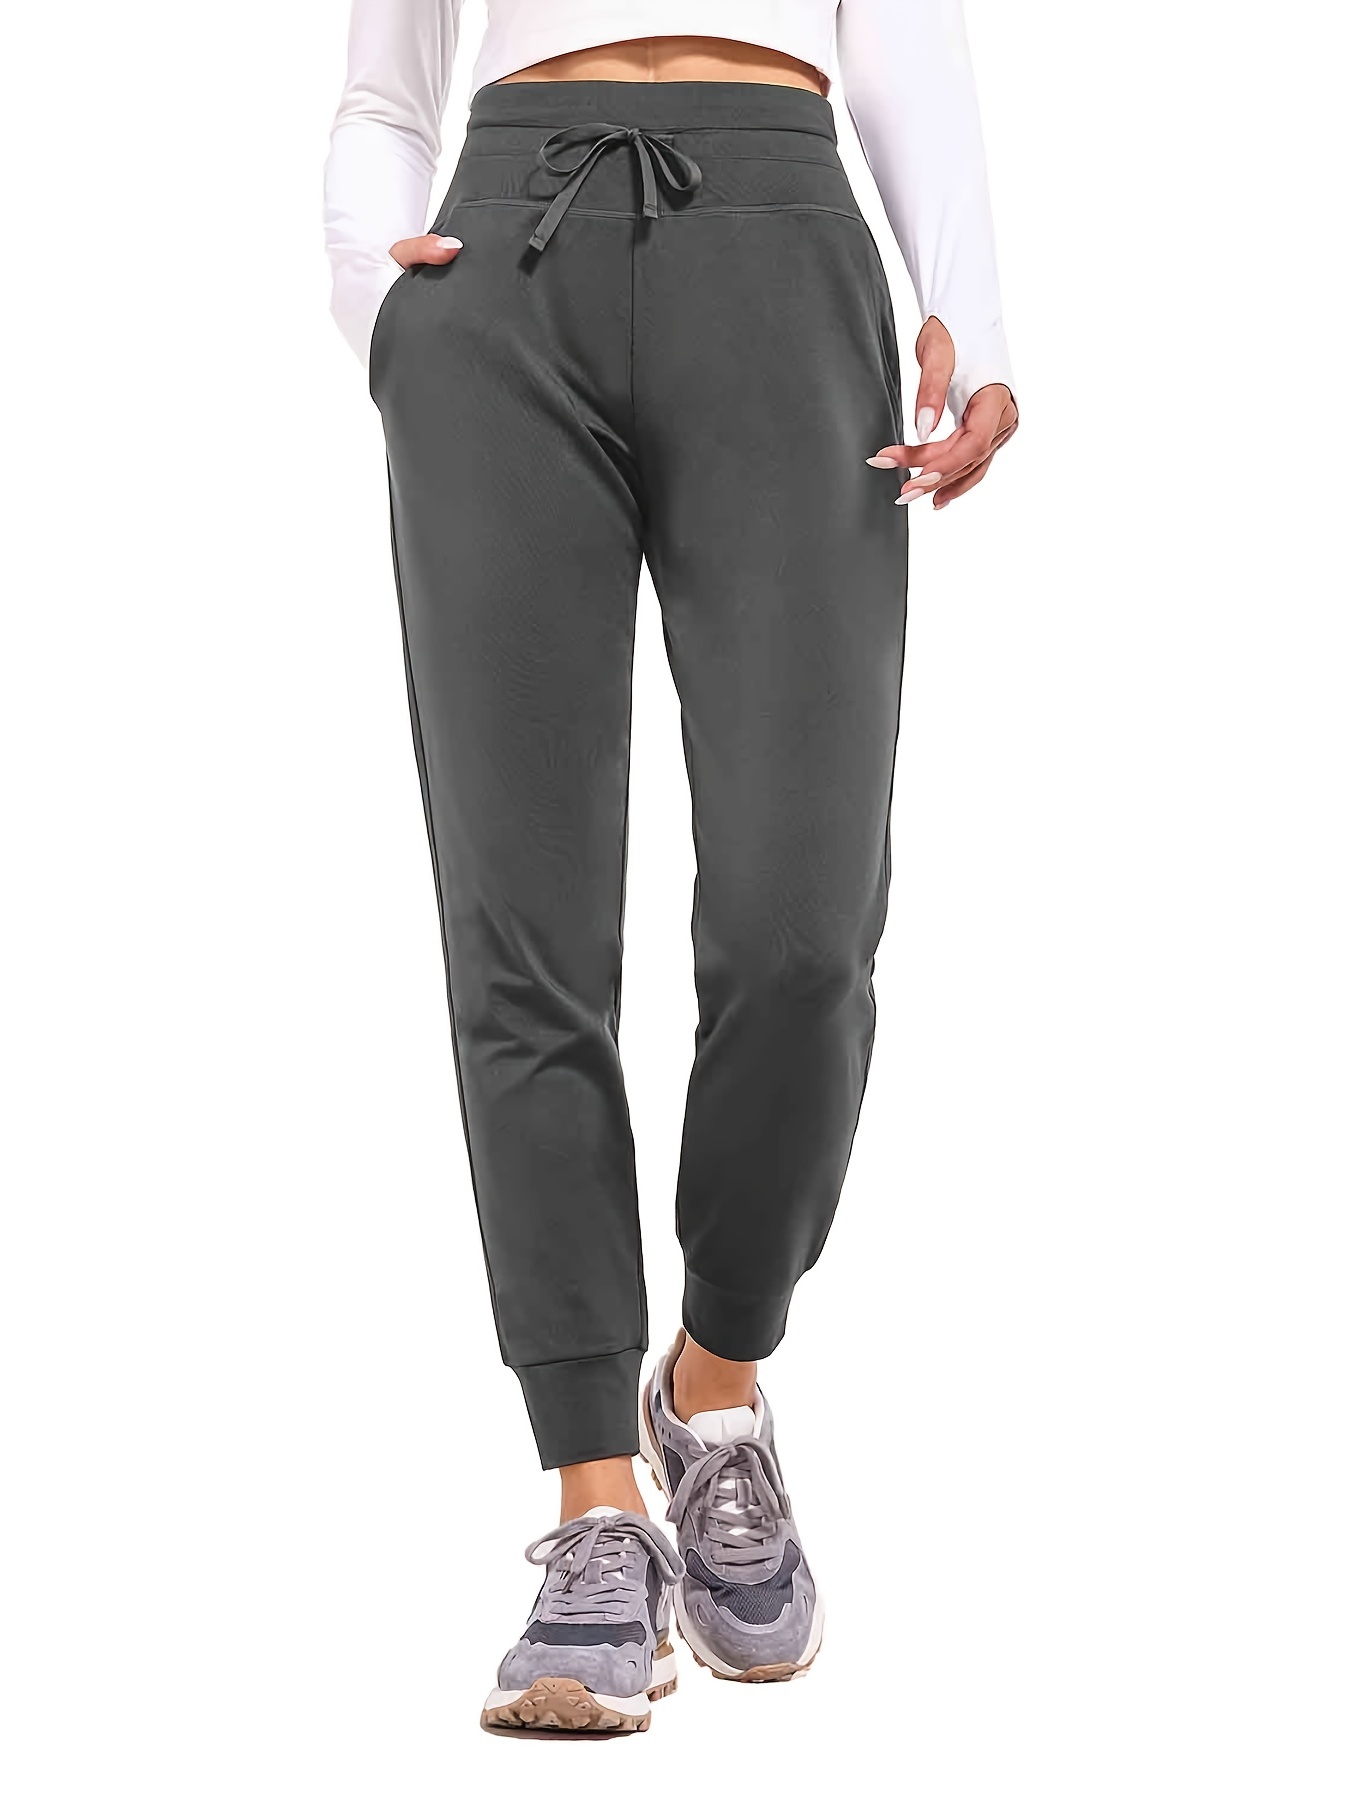  RlaGed - Pantalones tipo cargo de senderismo para mujer,  pantalones deportivos ligeros, de secado rápido, resistentes al agua para  pesca y al aire libre, UPF 50 y bolsillos con cremallera 